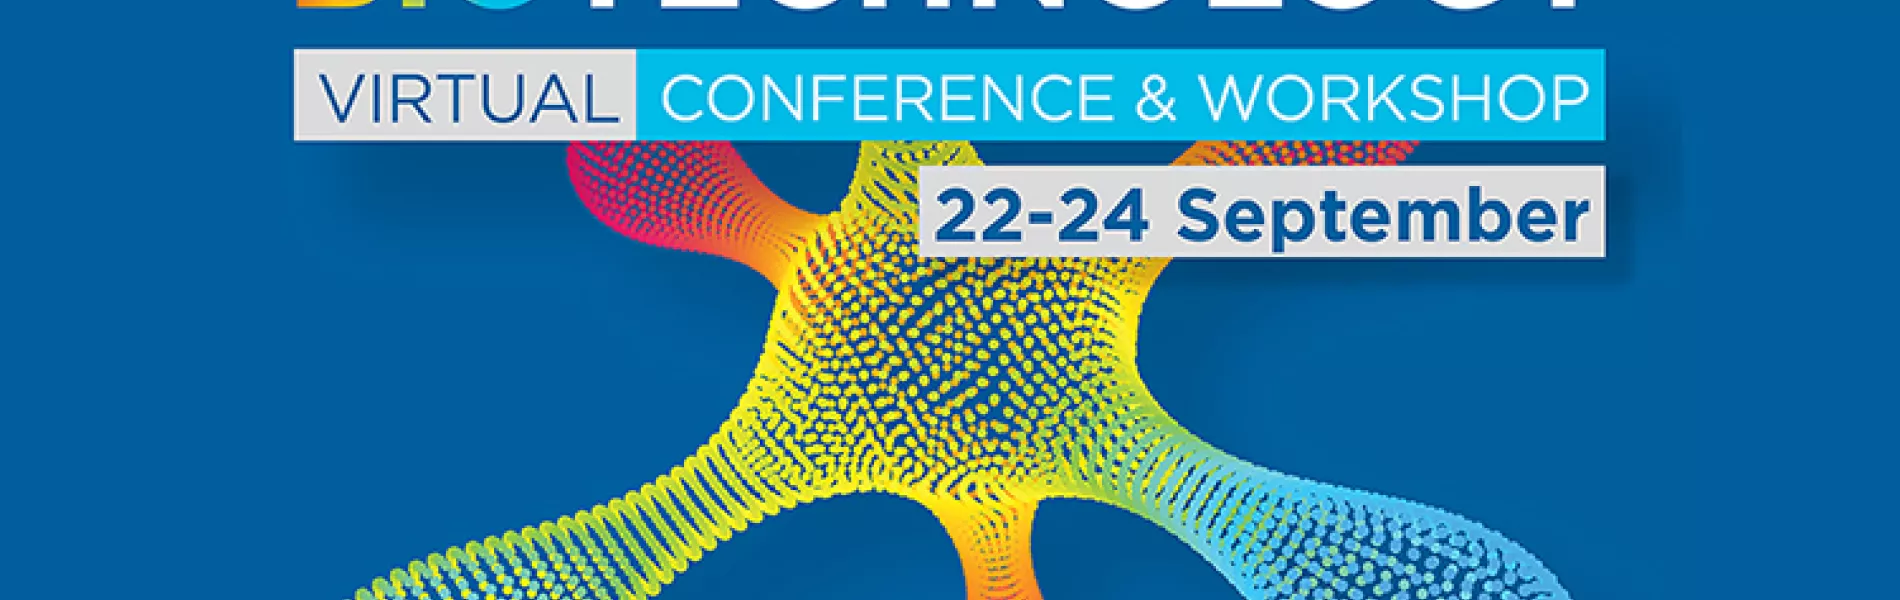 2021 ISPE Biotechnology Conference & Workshop Banner